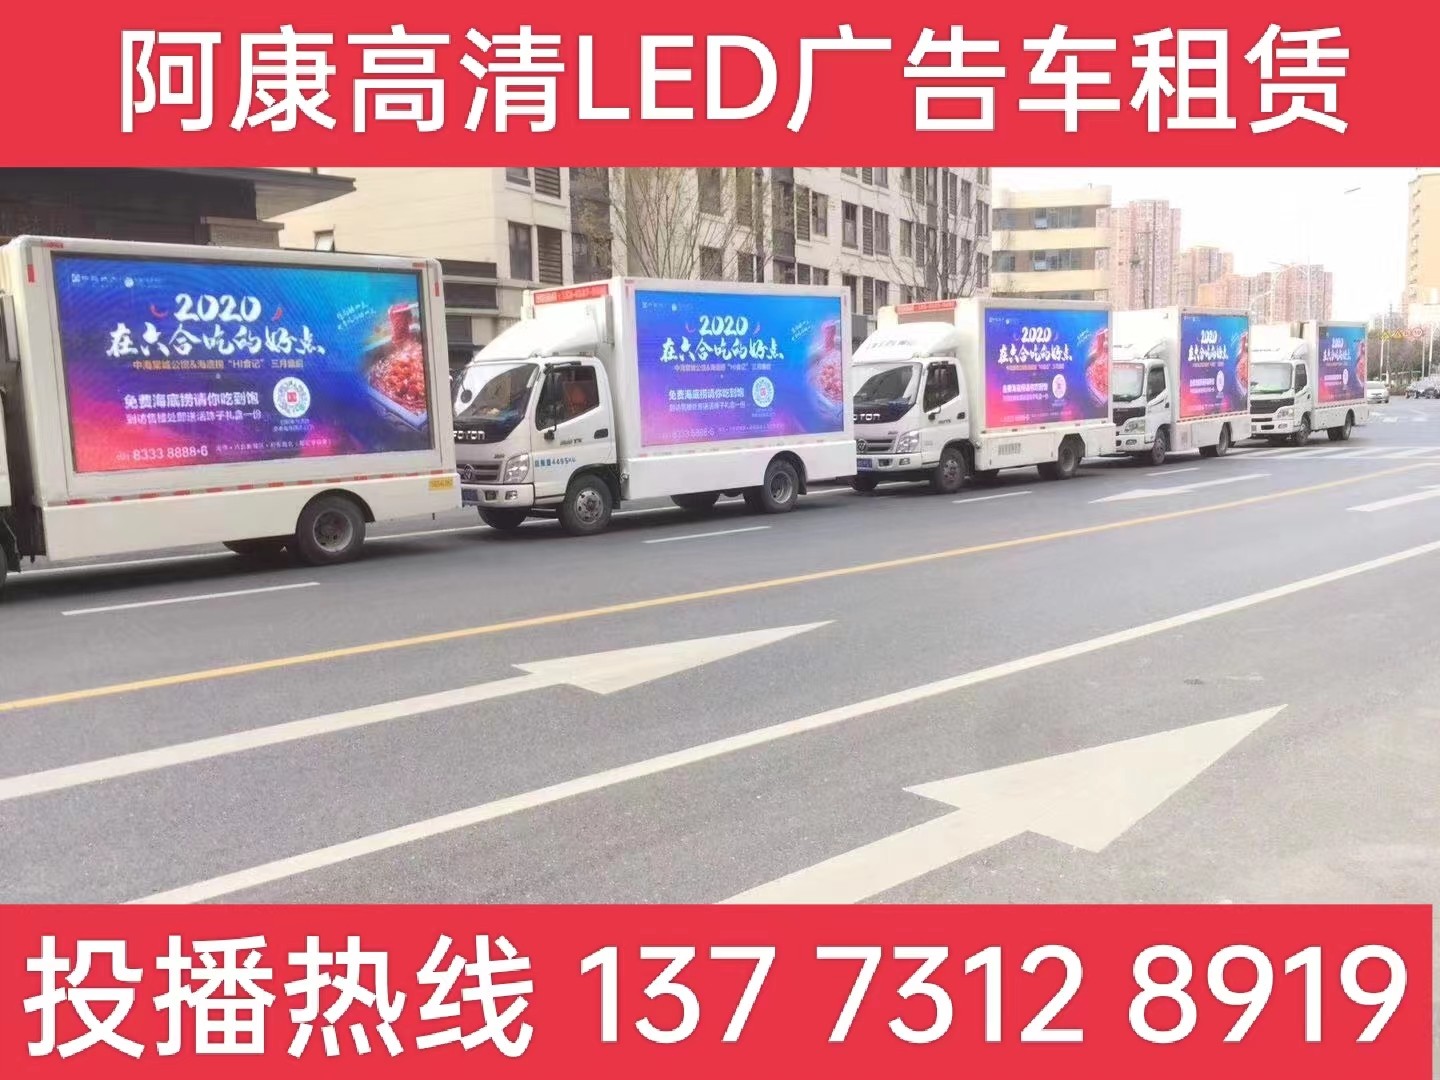 江阴宣传车出租-海底捞LED广告